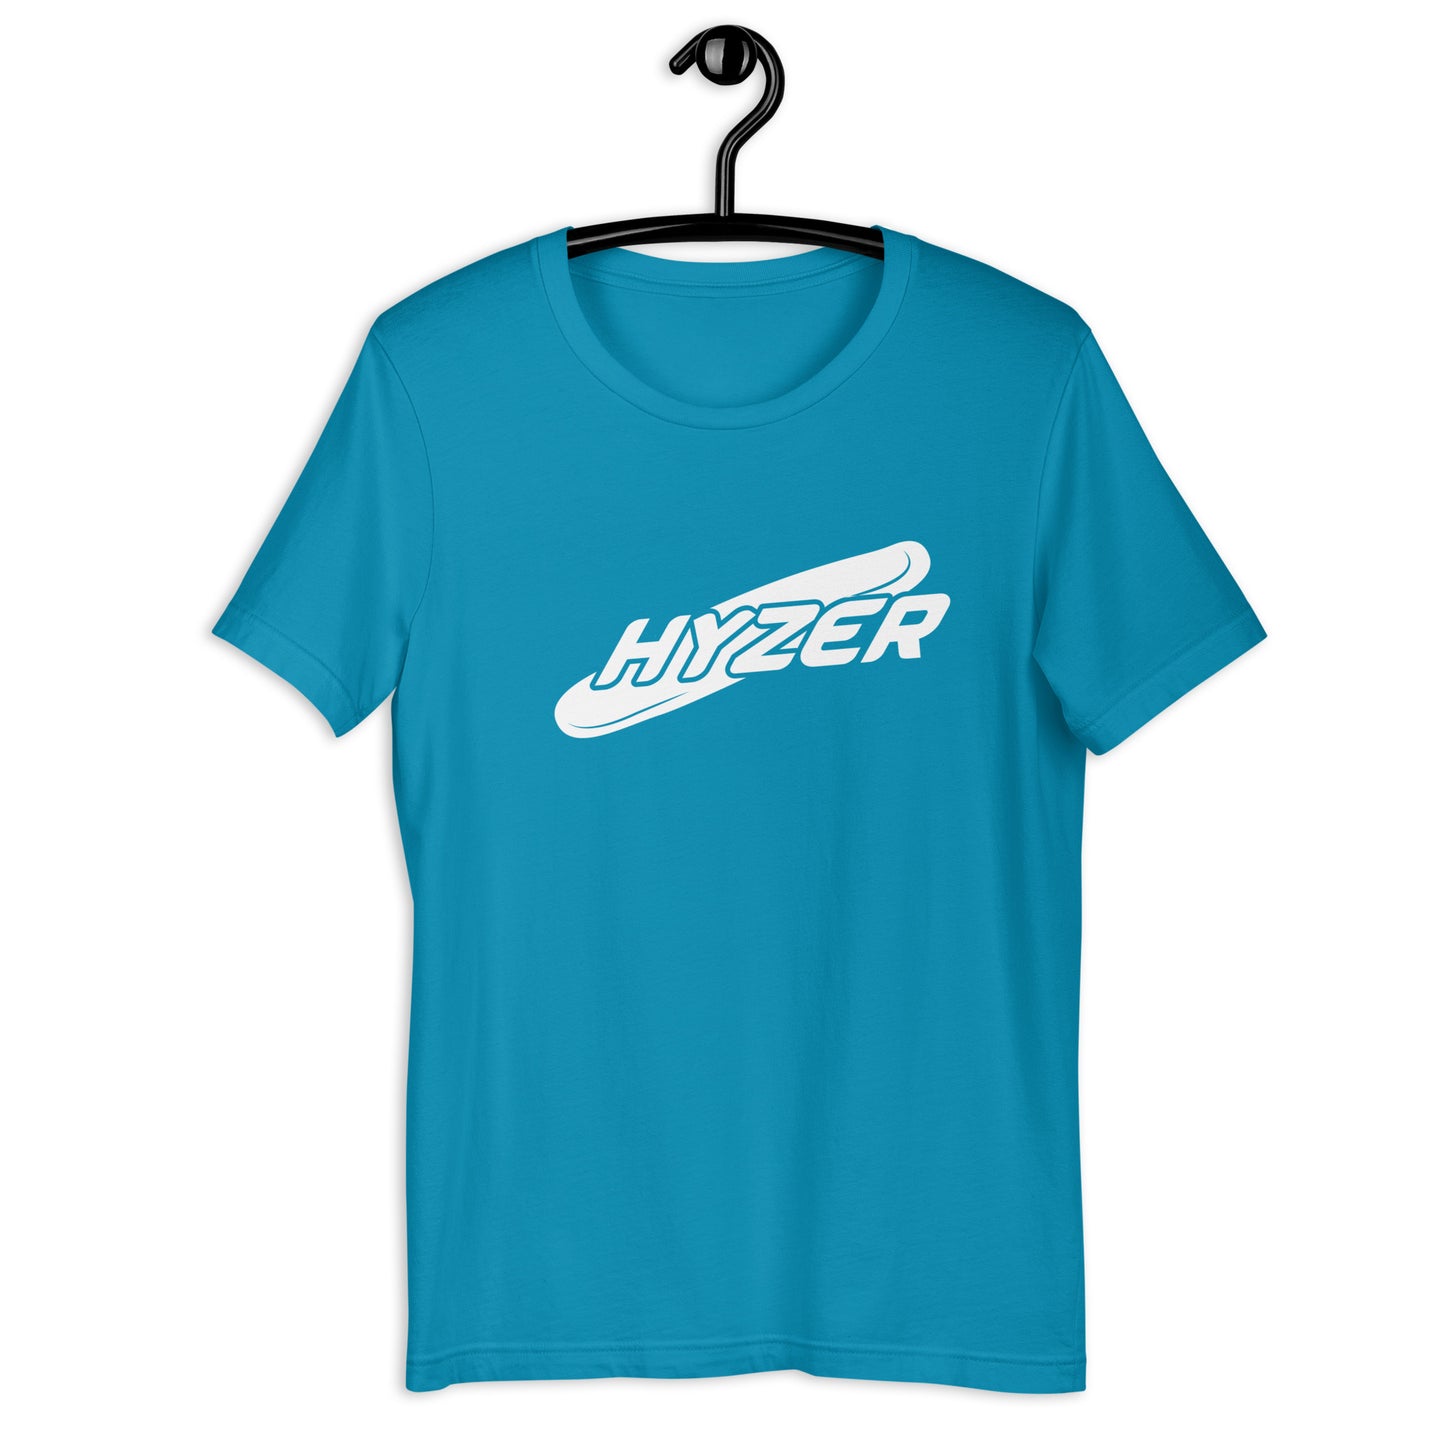 HYZER - Unisex t-shirt